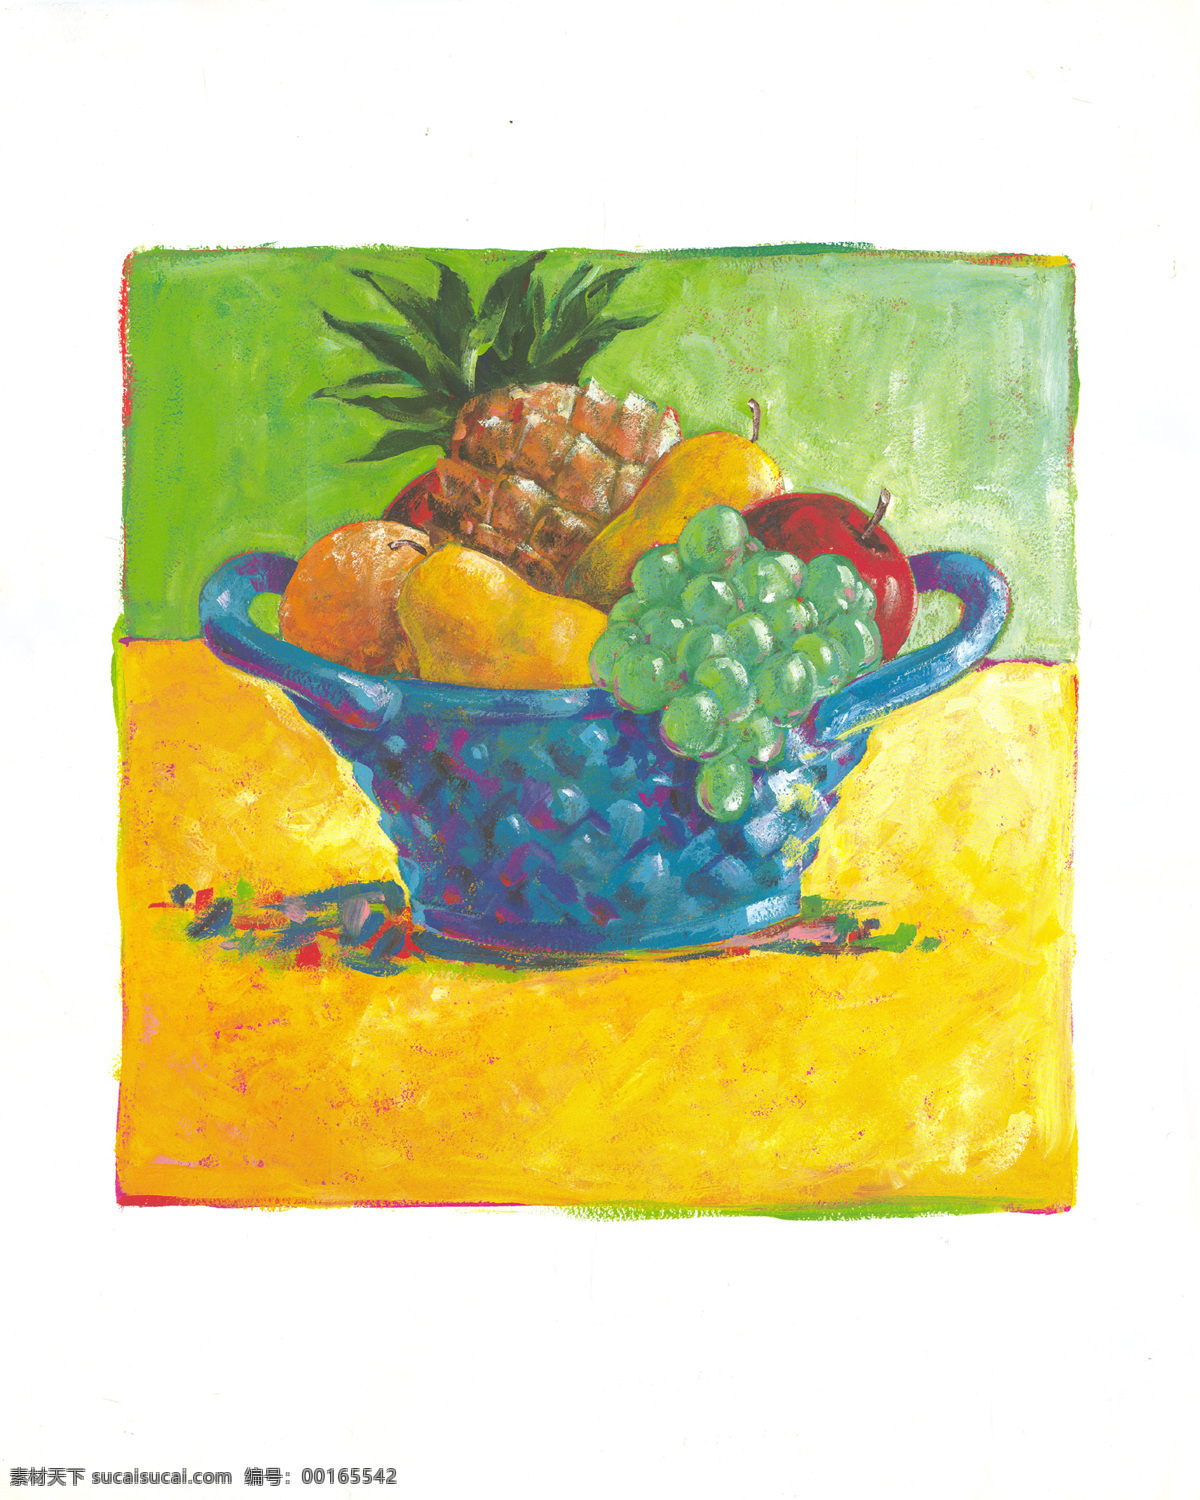 菠萝 绘画书法 静物 葡萄 水果 文化艺术 油画水果 油画 设计素材 模板下载 蓝子 装饰素材 无框画